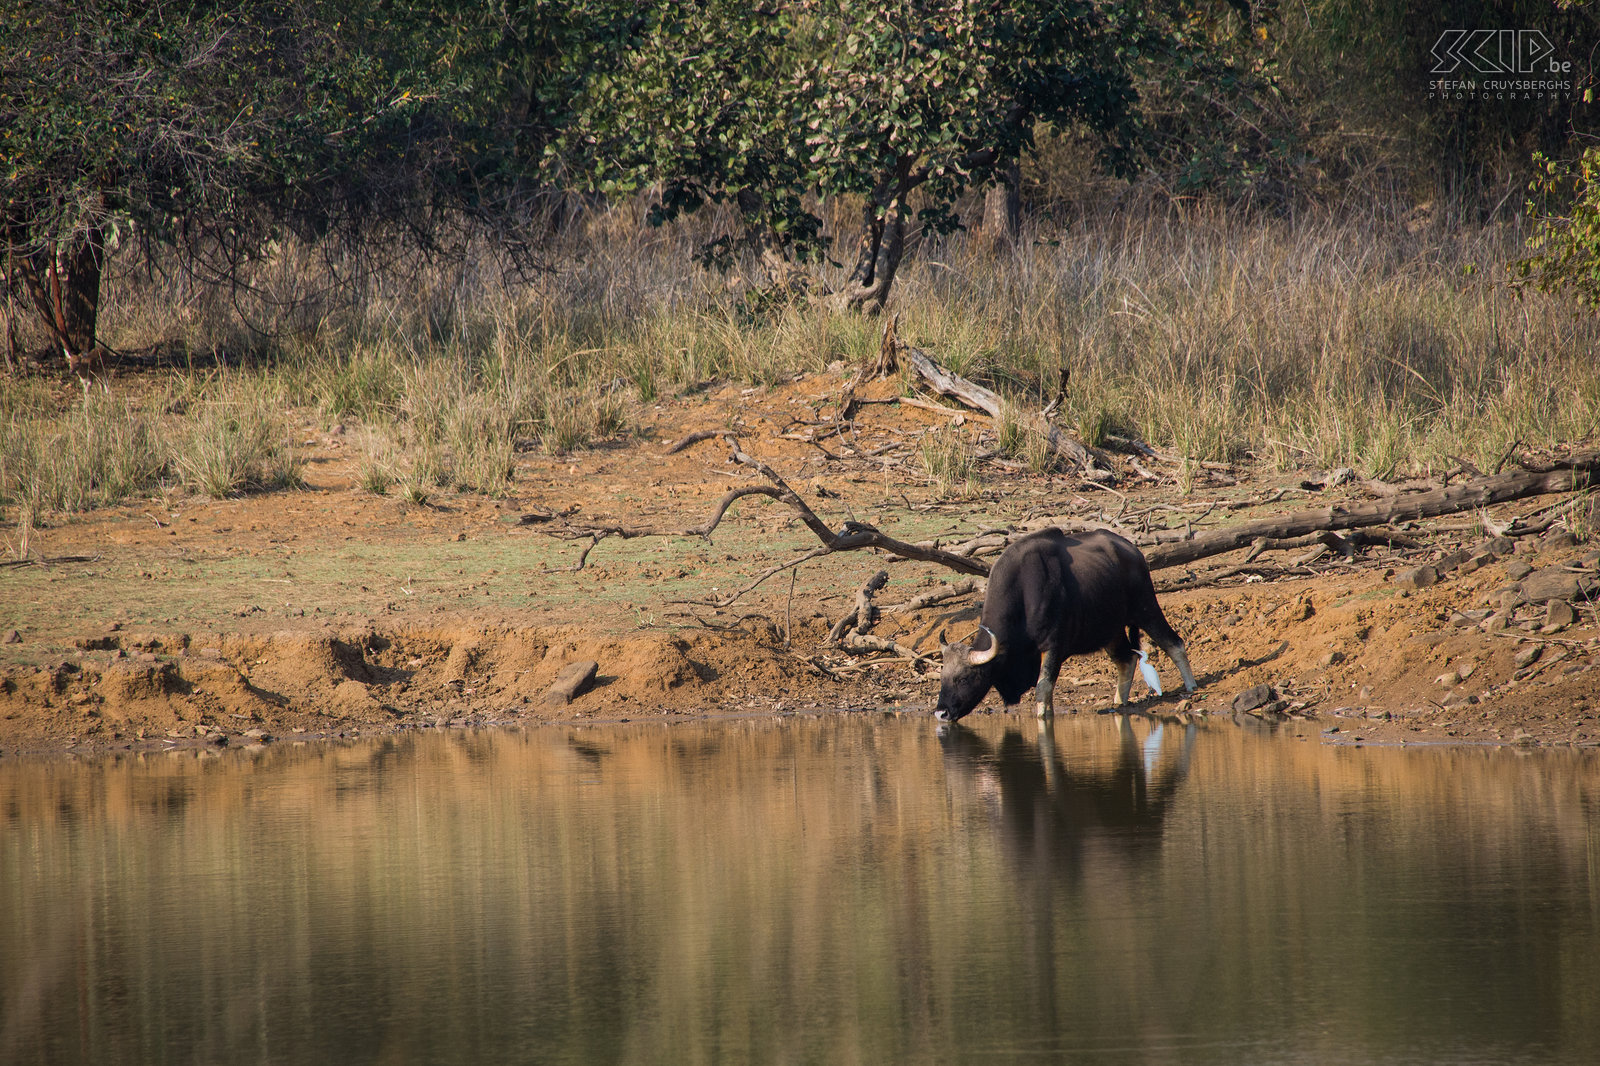 Tadoba - Gaur De gaur, soms ook wel de Indische bison genoemd, is het grootste rund van Azië. Stefan Cruysberghs